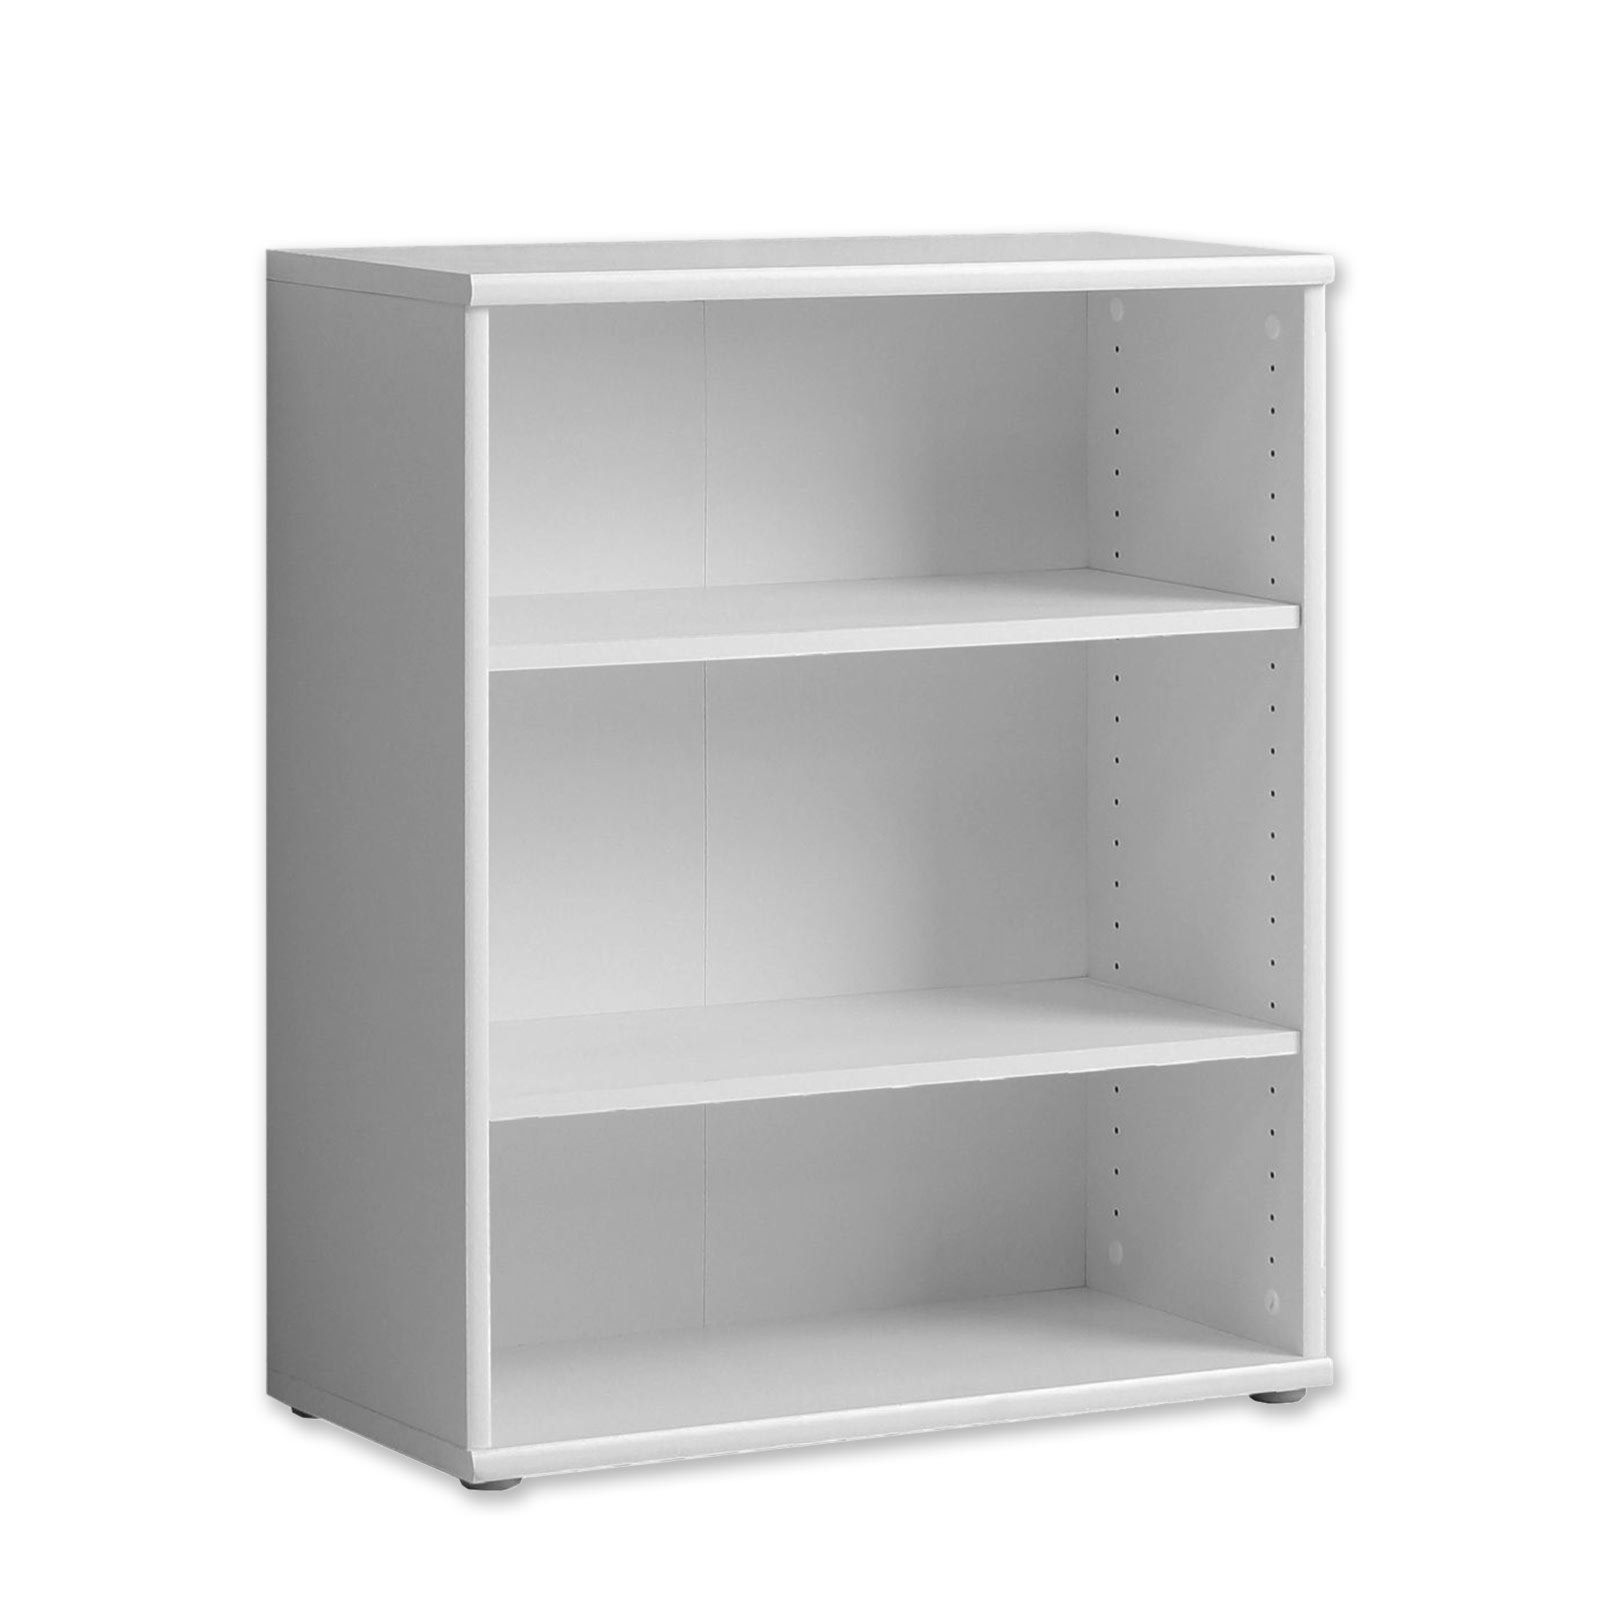 Standregal - weiß - 73x85 cm | Online bei ROLLER kaufen